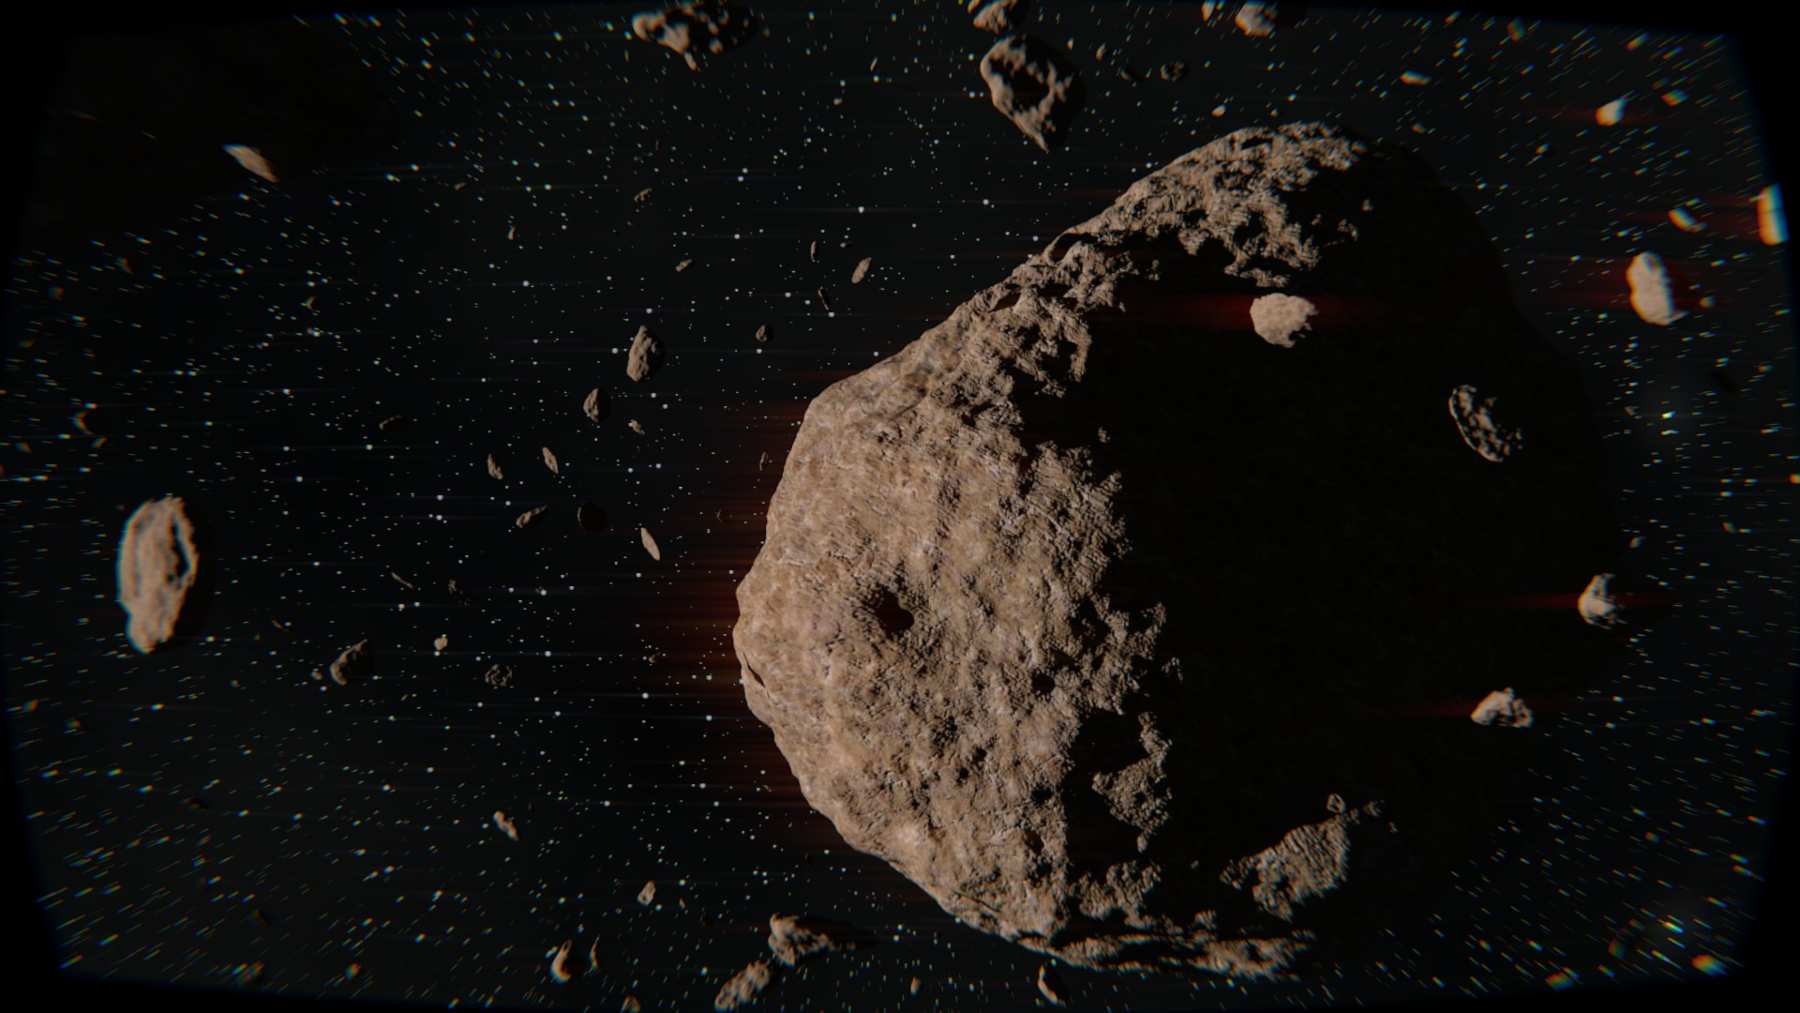 Asteroides rozadores